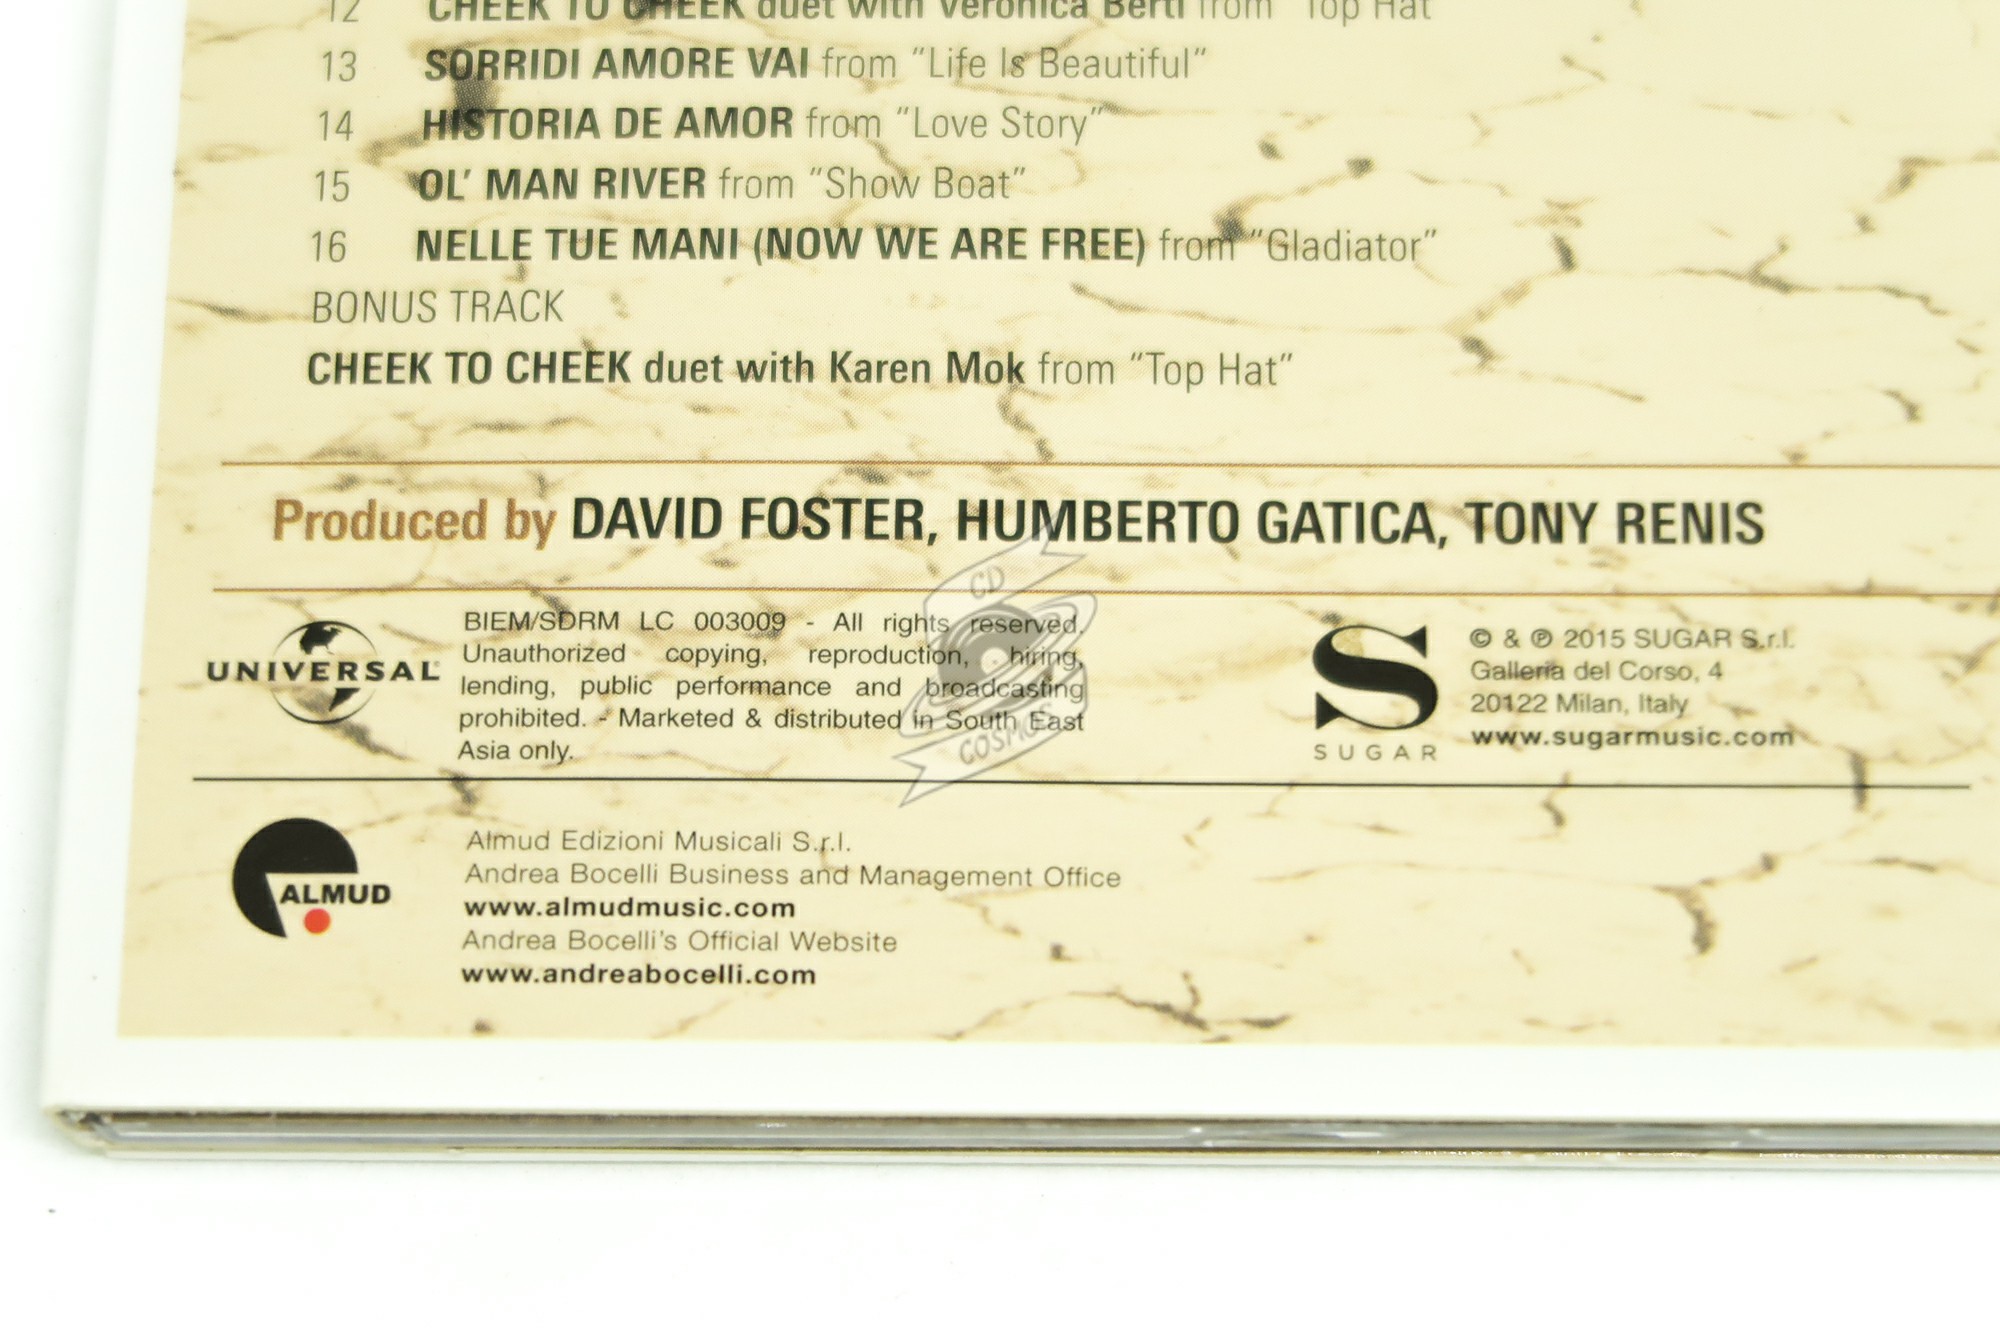 CD Album - Andrea Bocelli - Cinema - Sugar - Italy